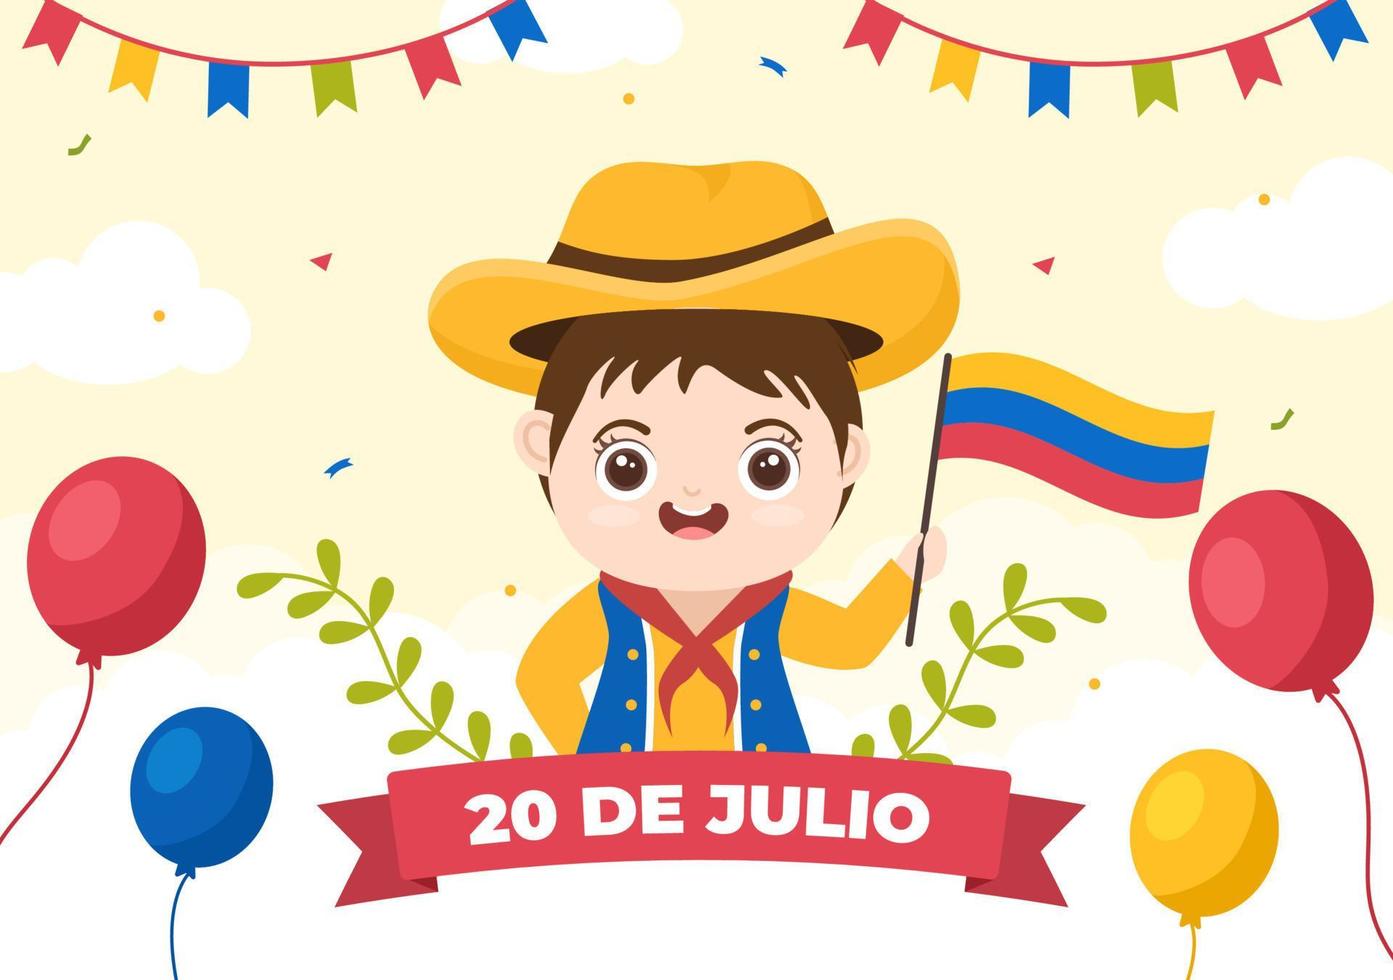 20 de julio independencia de colombia ilustración de dibujos animados con banderas, globos y personajes de niños lindos para el diseño de carteles vector